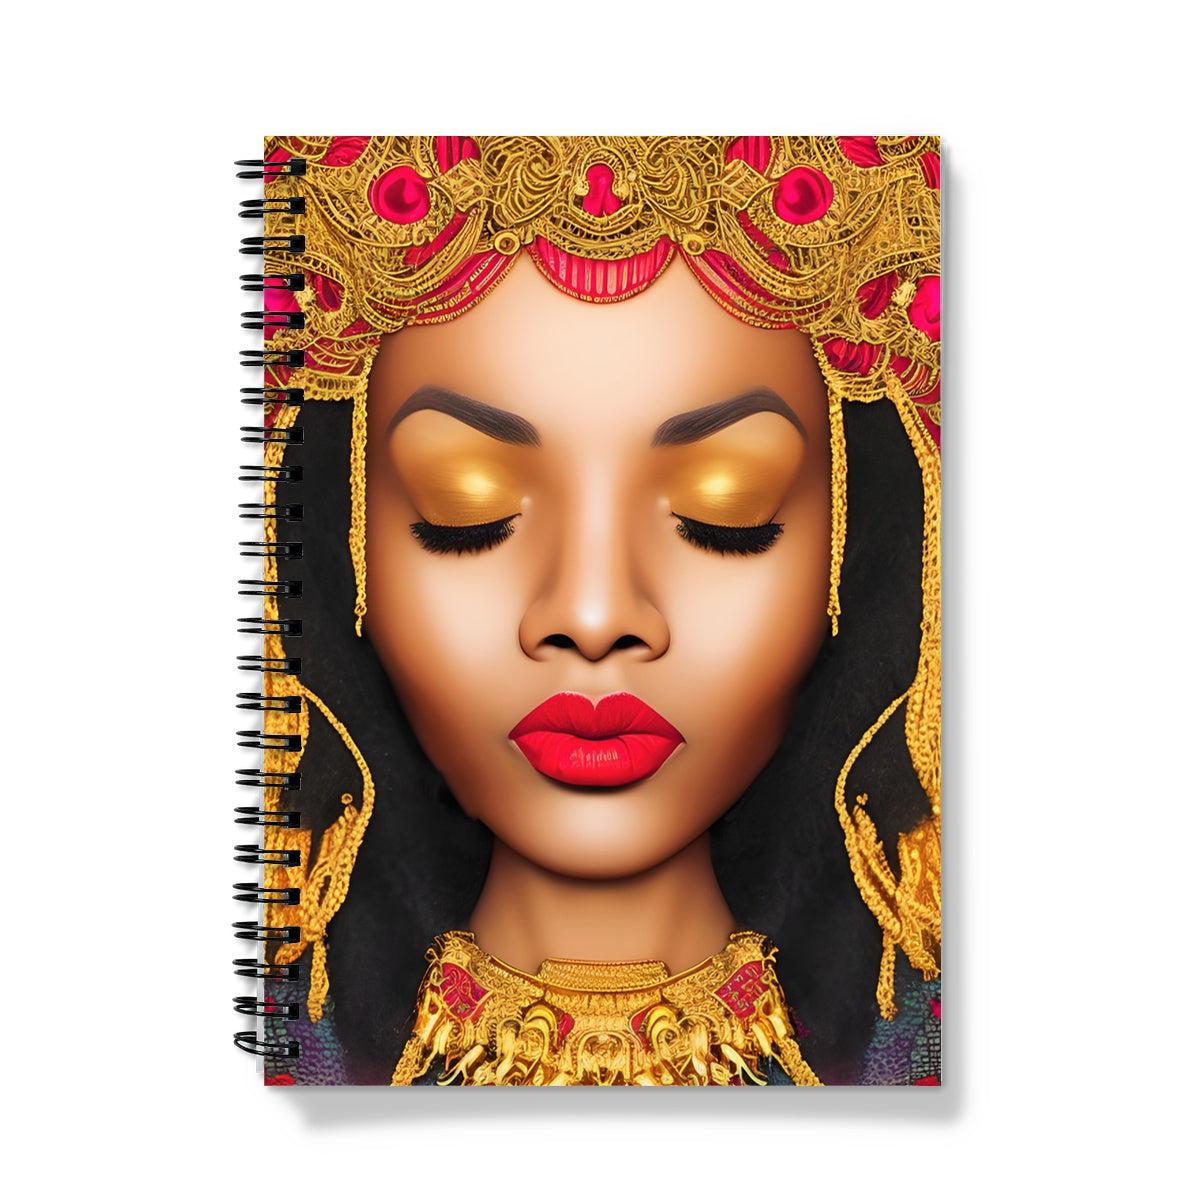 Goddess Golden Spiral Notebook